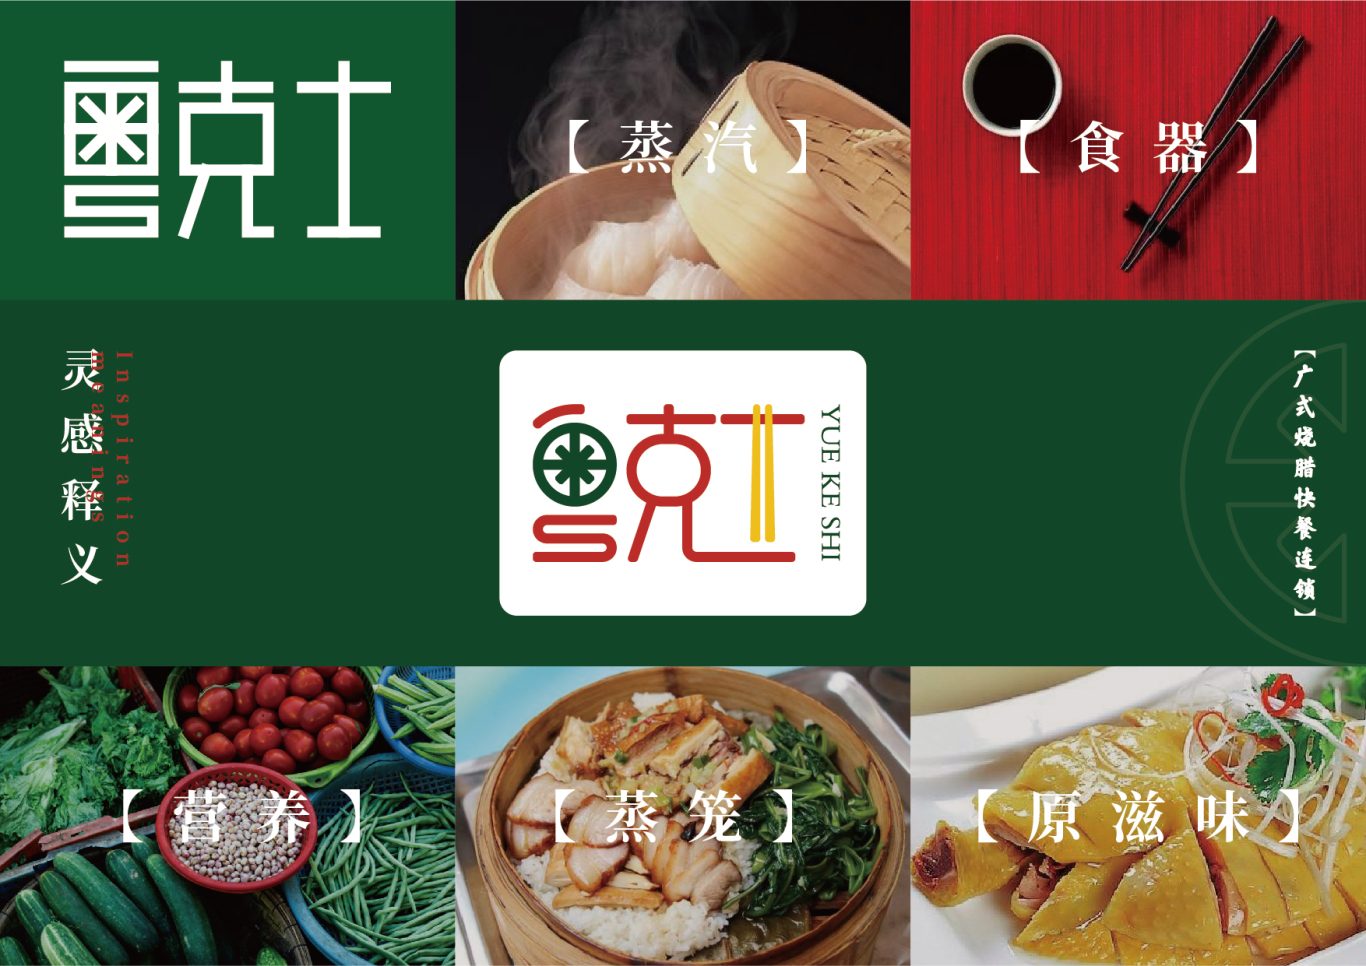 粤克士快餐logo vi设计图8